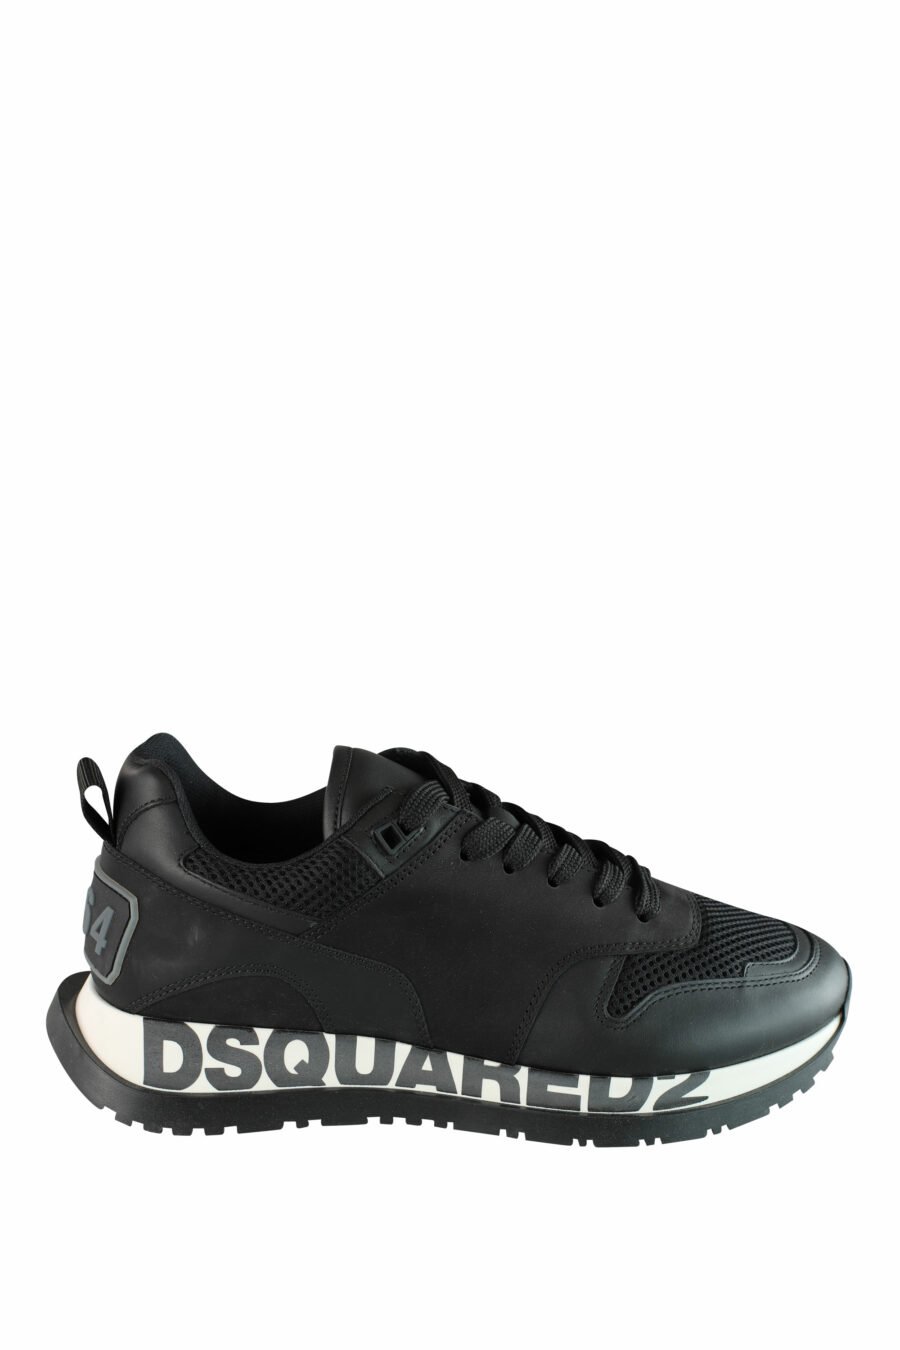 Chaussures de course noires avec semelle blanche et logo noir - IMG 1430